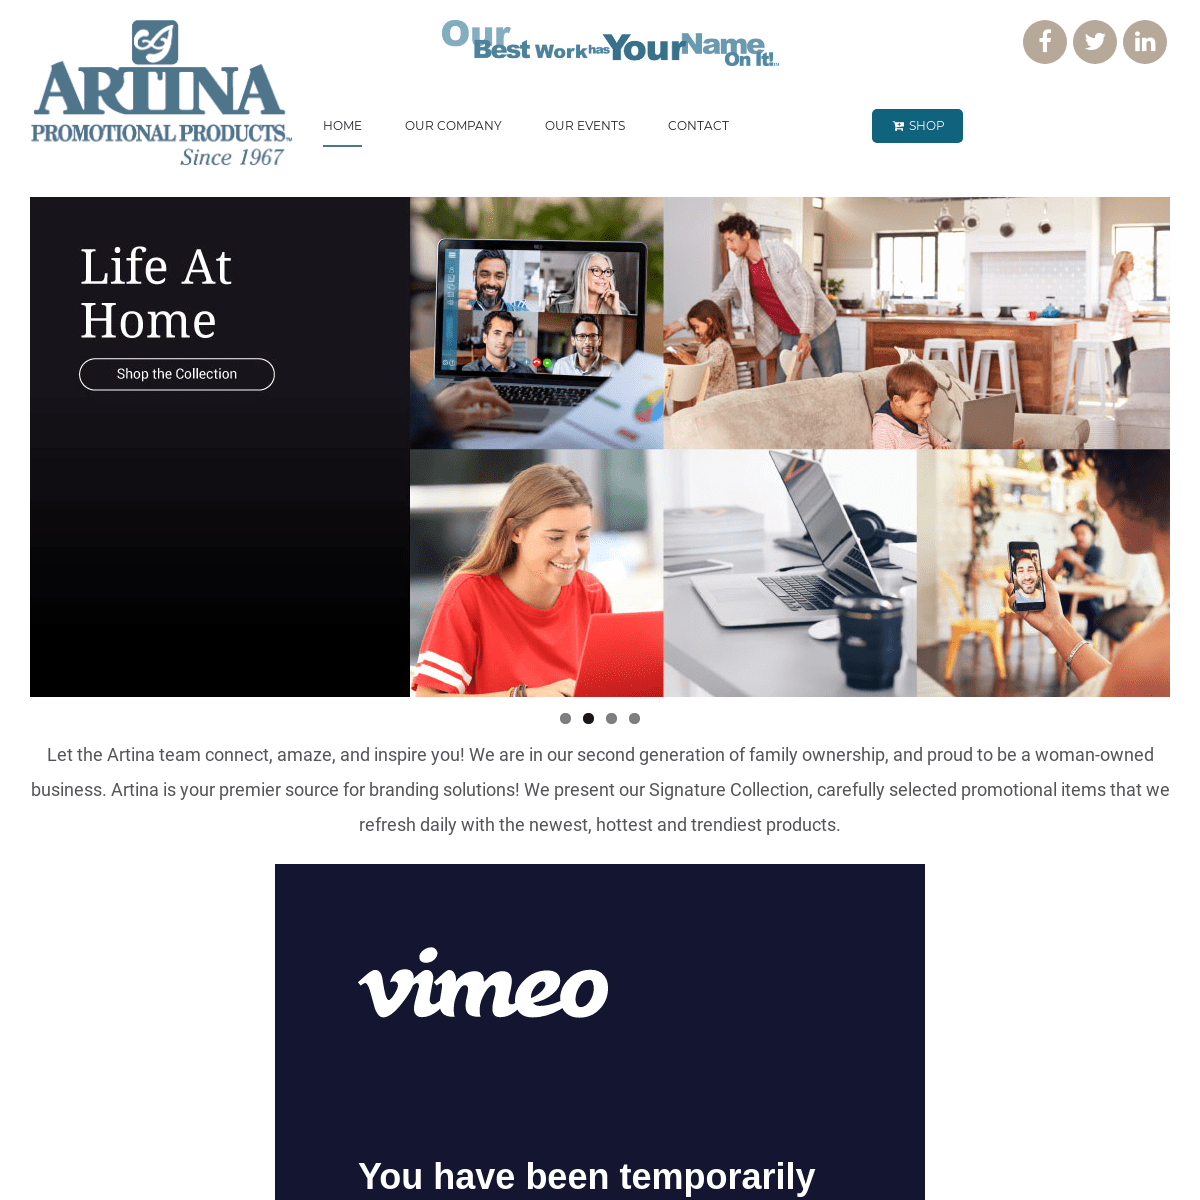 A complete backup of artina.com